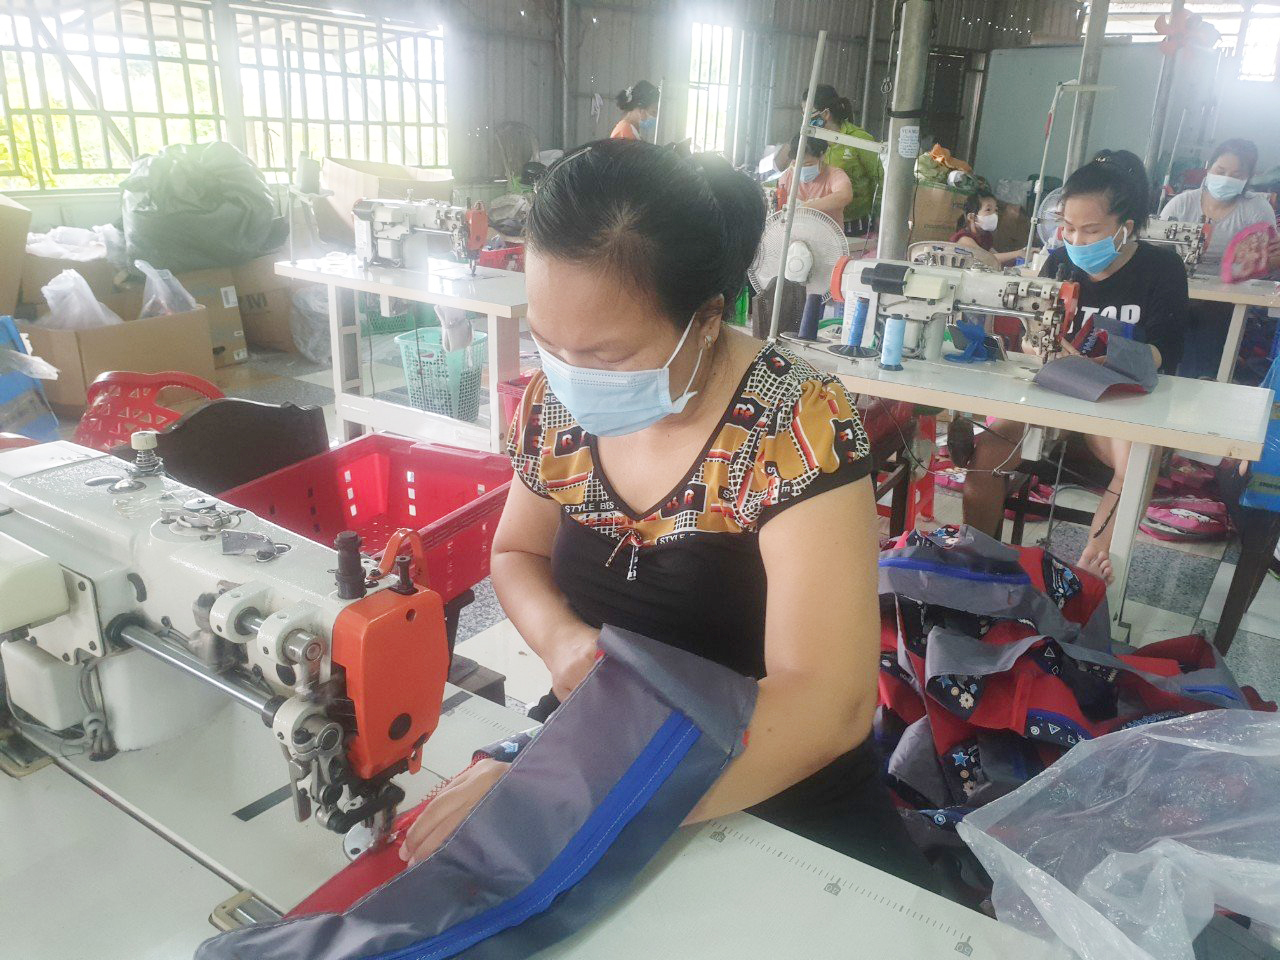 Cơ sở sản xuất túi xách Bảo Hân đã được Ngân hàng Chính sách xã hội cho vay 30 triệu đồng để thu mua nguyên liệu và sửa chữa một số thiết bị hư hỏng. Cơ sở này đang giải quyết việc làm cho 12 lao động địa phương.